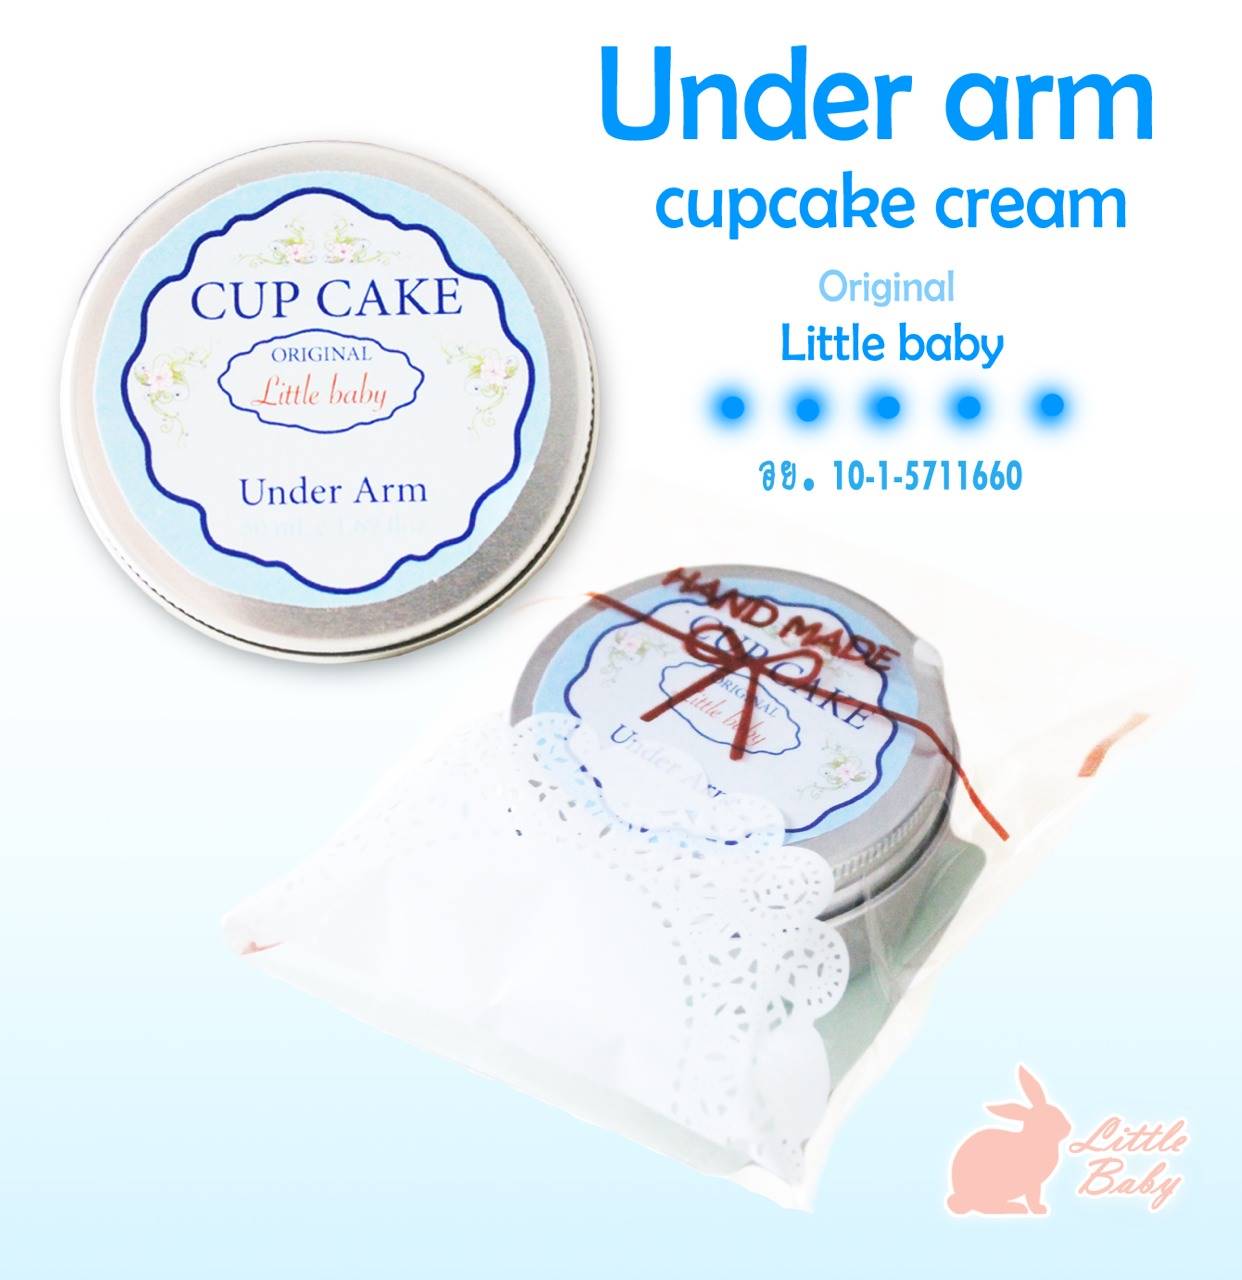 ปัญหารักแร้ดํา, รักแร้ดํา, รักแร้ดํา pantip, รักแร้ดํา หนังไก่, รักแร้ดํา ใช้อะไรดี, รักแร้ดํา ทำไงดี, พาสเจล, พาสเจล รักแร้, พาสเจล รักแร้ขาว, Cup Cake Under Arm, Under Arm  Cupcake cream, Cup Cake cream